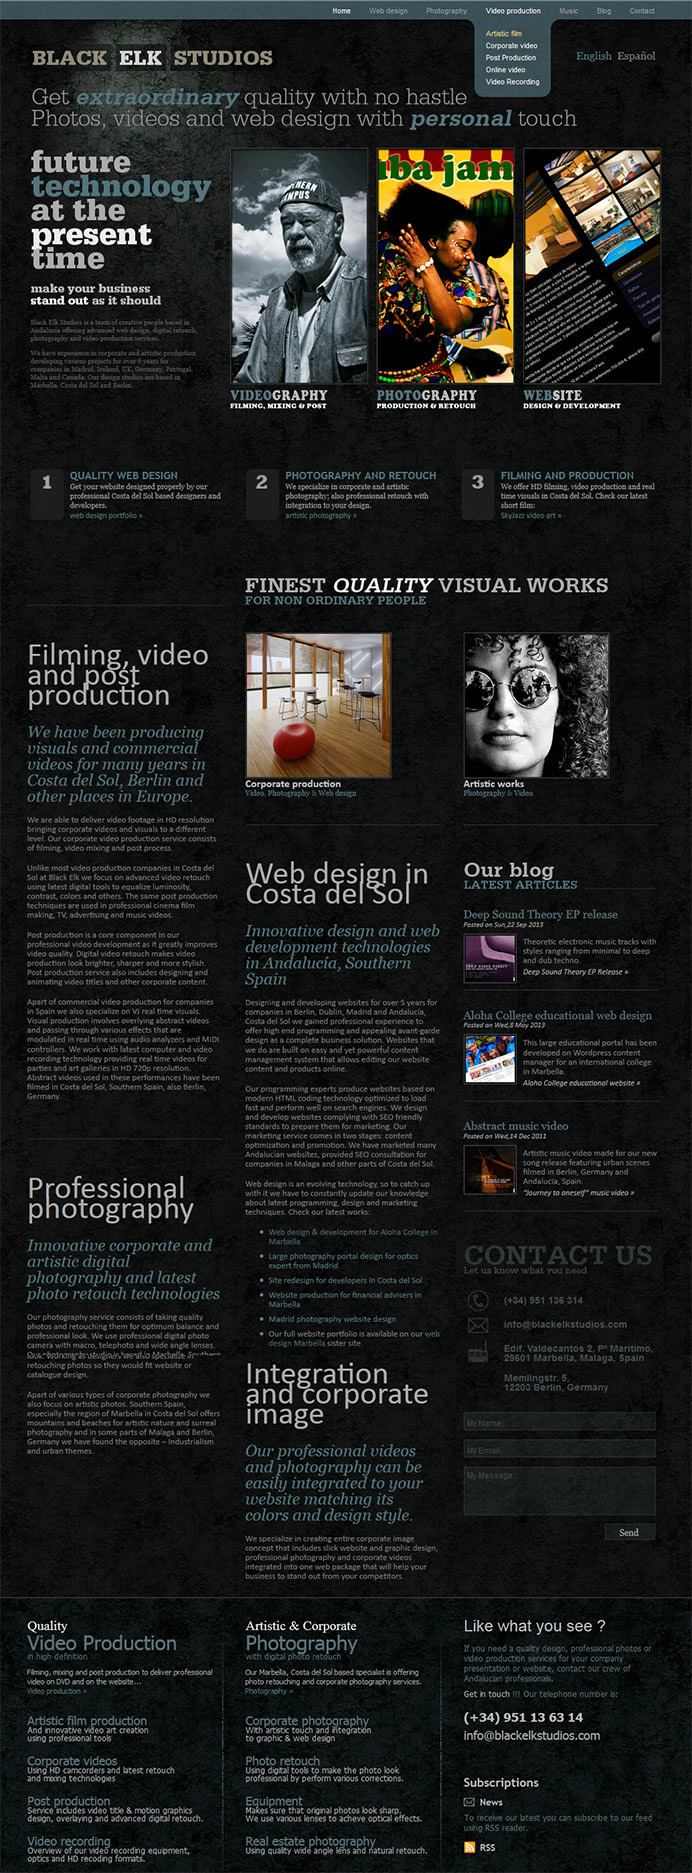 Estudio especializado en el diseño y desarrollo de webs, vídeo y fotografía en Madird, Marbella y Berlín